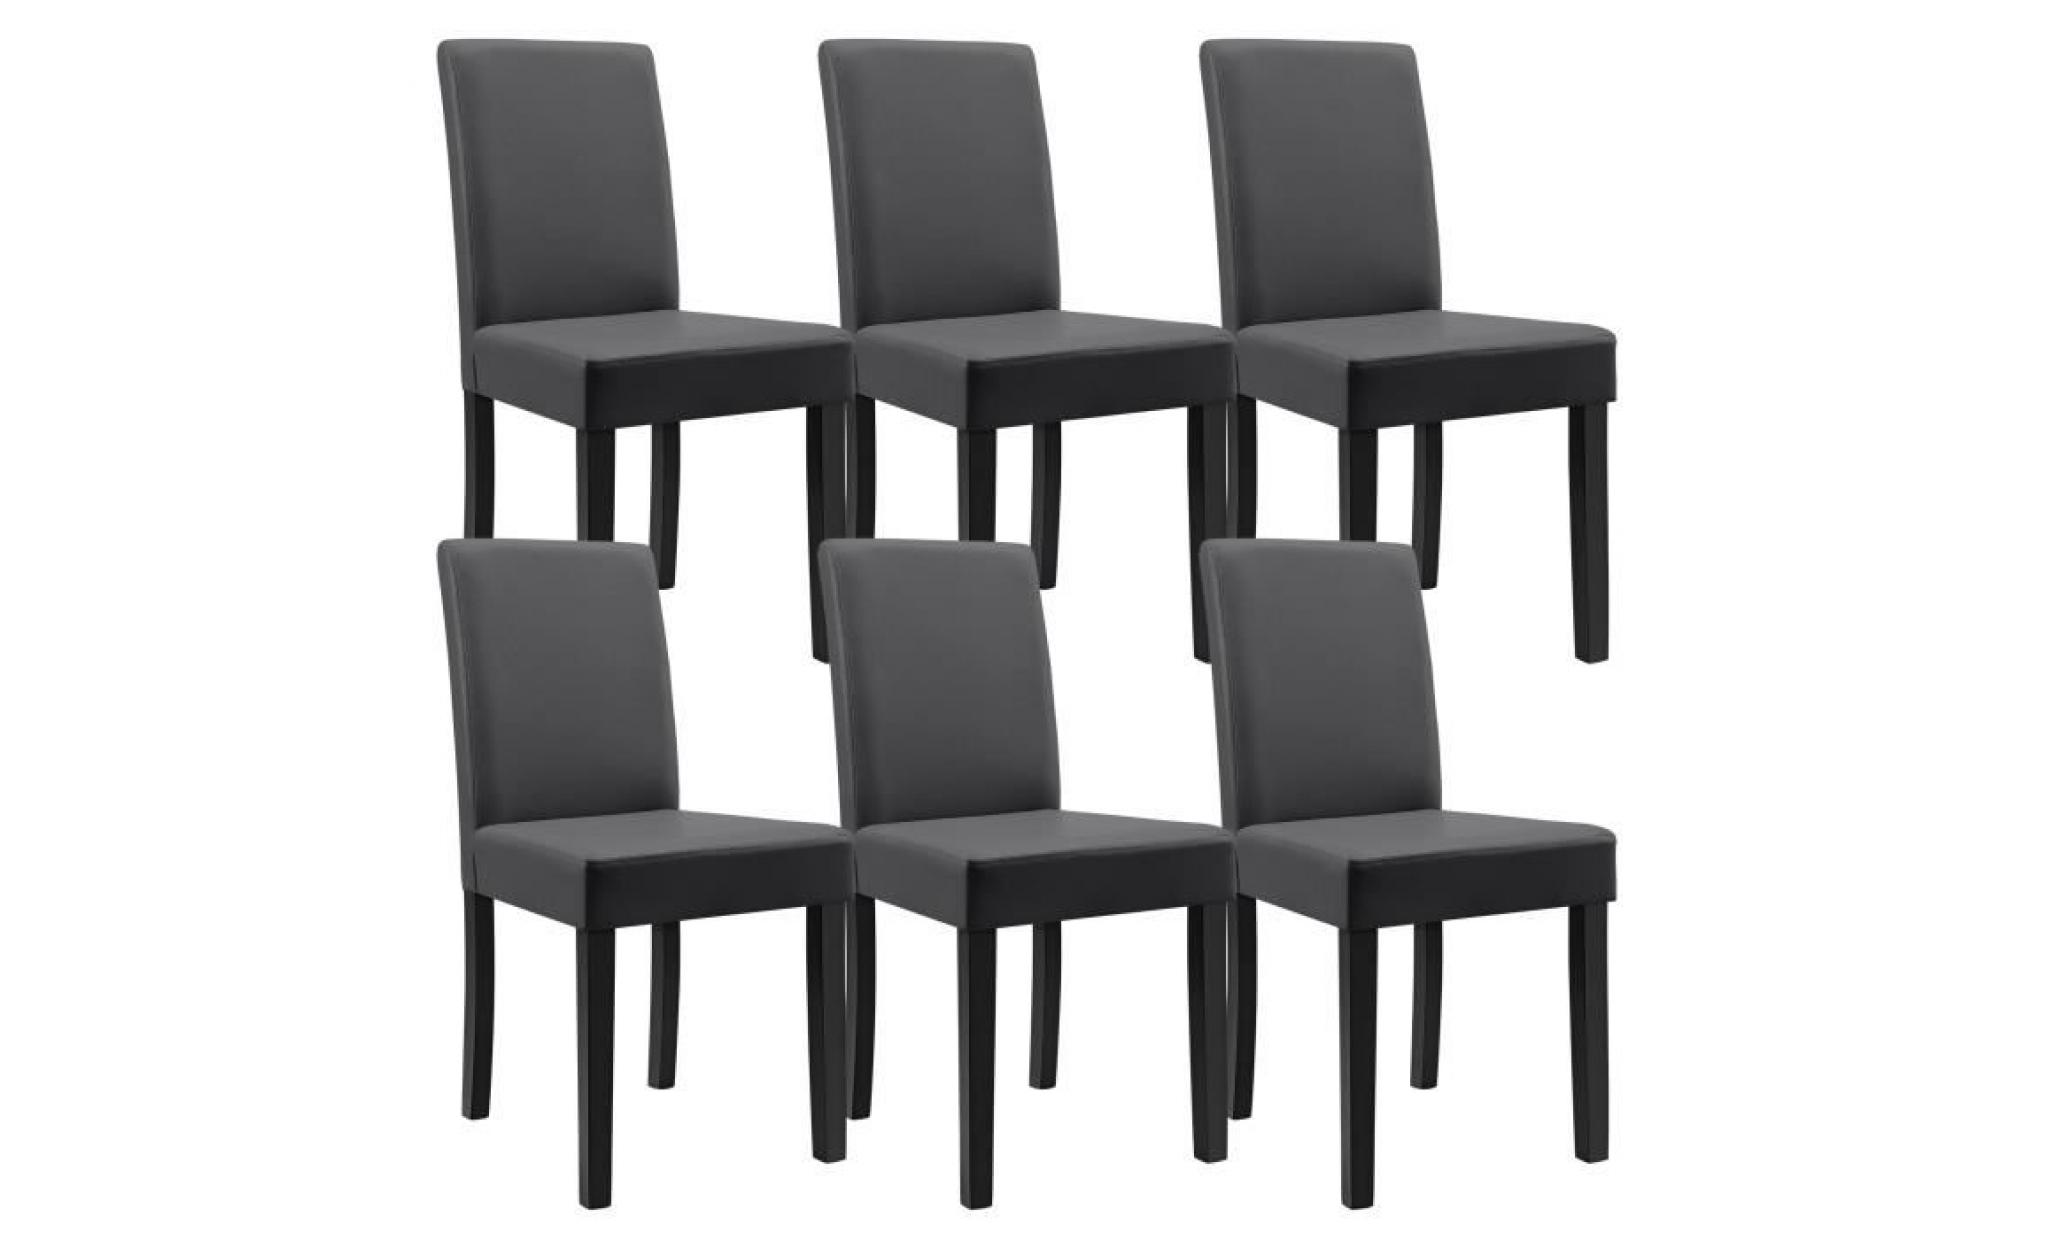 en.casa 6 chaises rembourrées (gris foncé) (de qualité supérieure) avec pieds en bois massif   housse en cuir synthétique   élégants